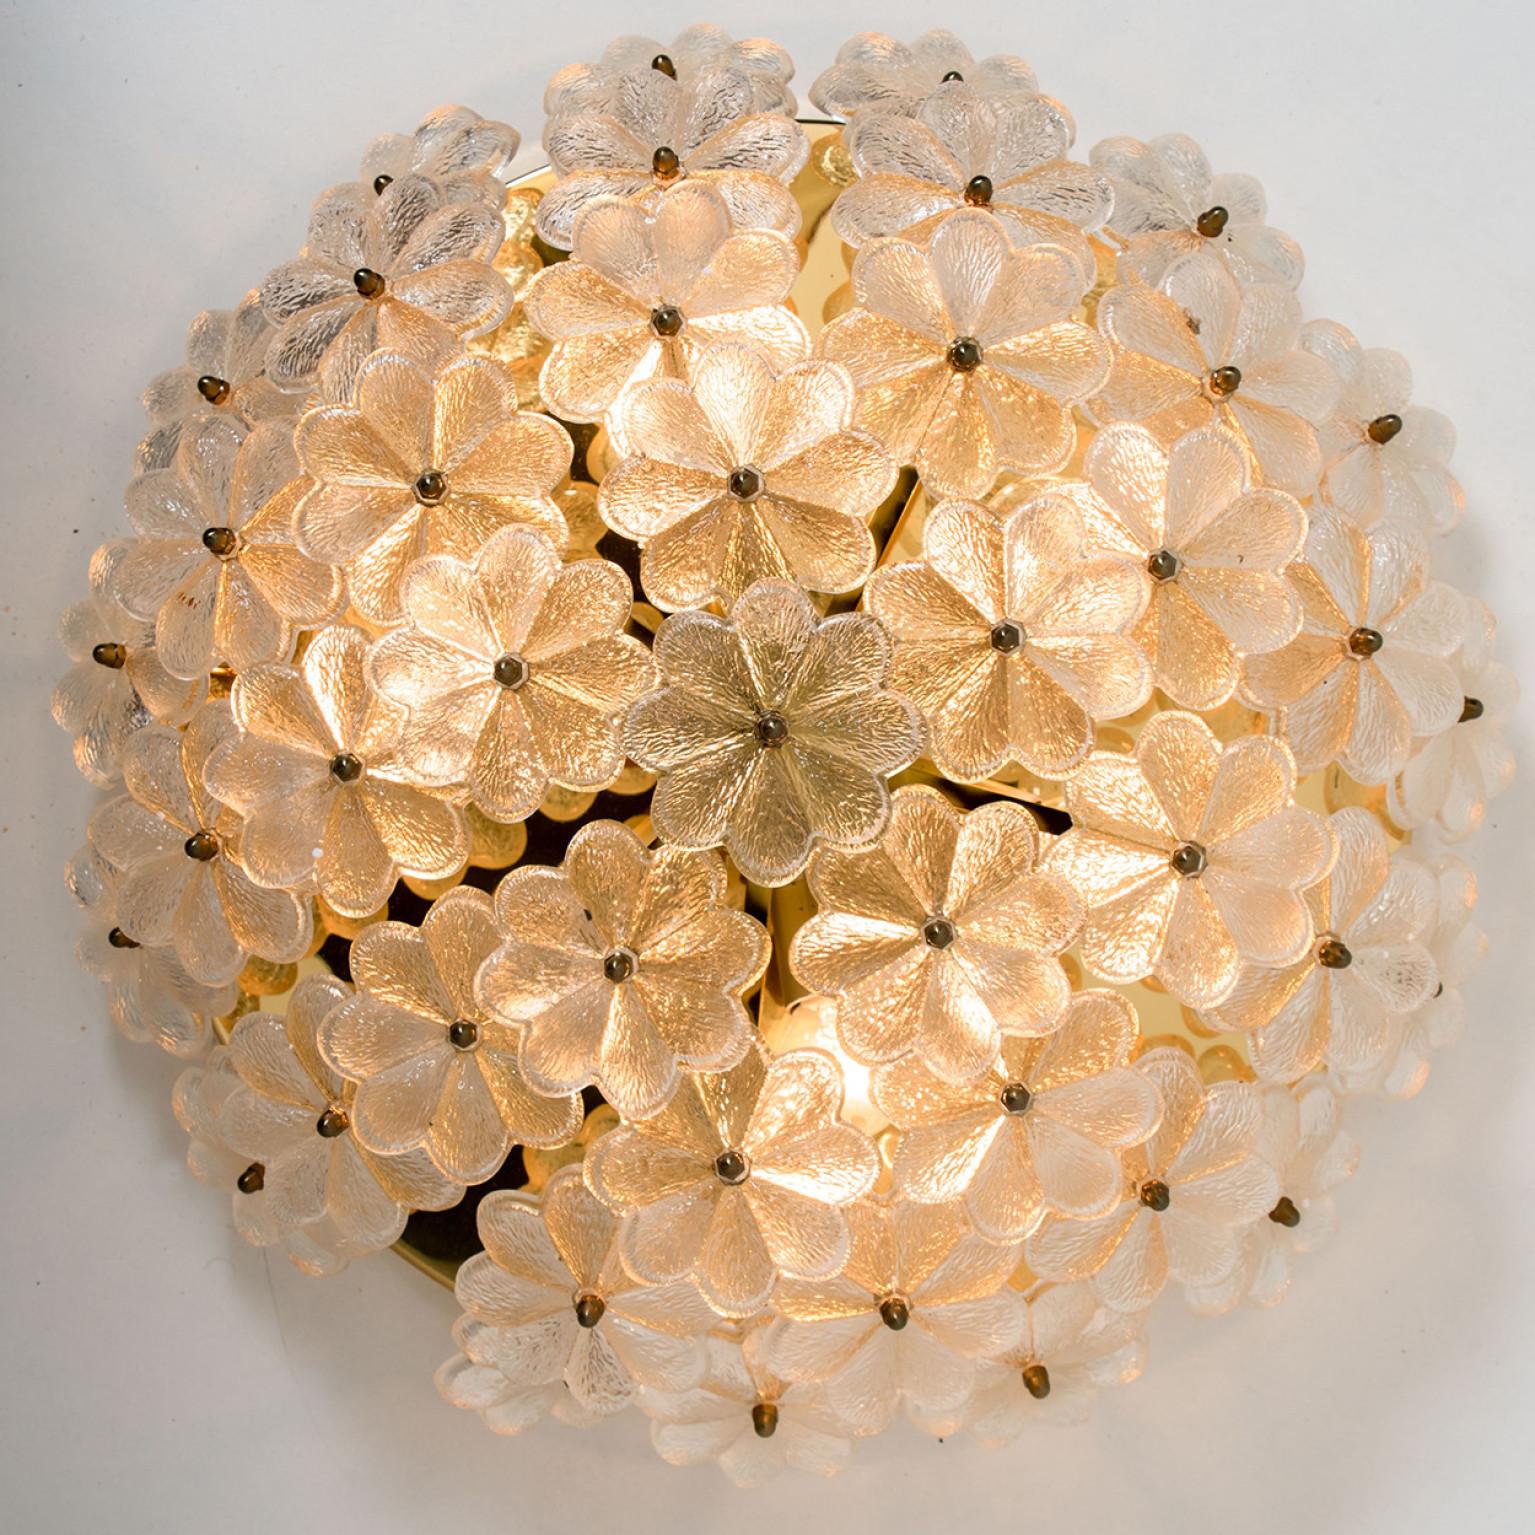 Wunderschönes Blumenglas aus Kristall über einem Messingrahmen, hergestellt von Ernst Palme in Deutschland, 1970er Jahre.

Kann auch als Wandleuchte verwendet werden.

Hochwertig und in sehr gutem Zustand. Gereinigt, gut verkabelt und